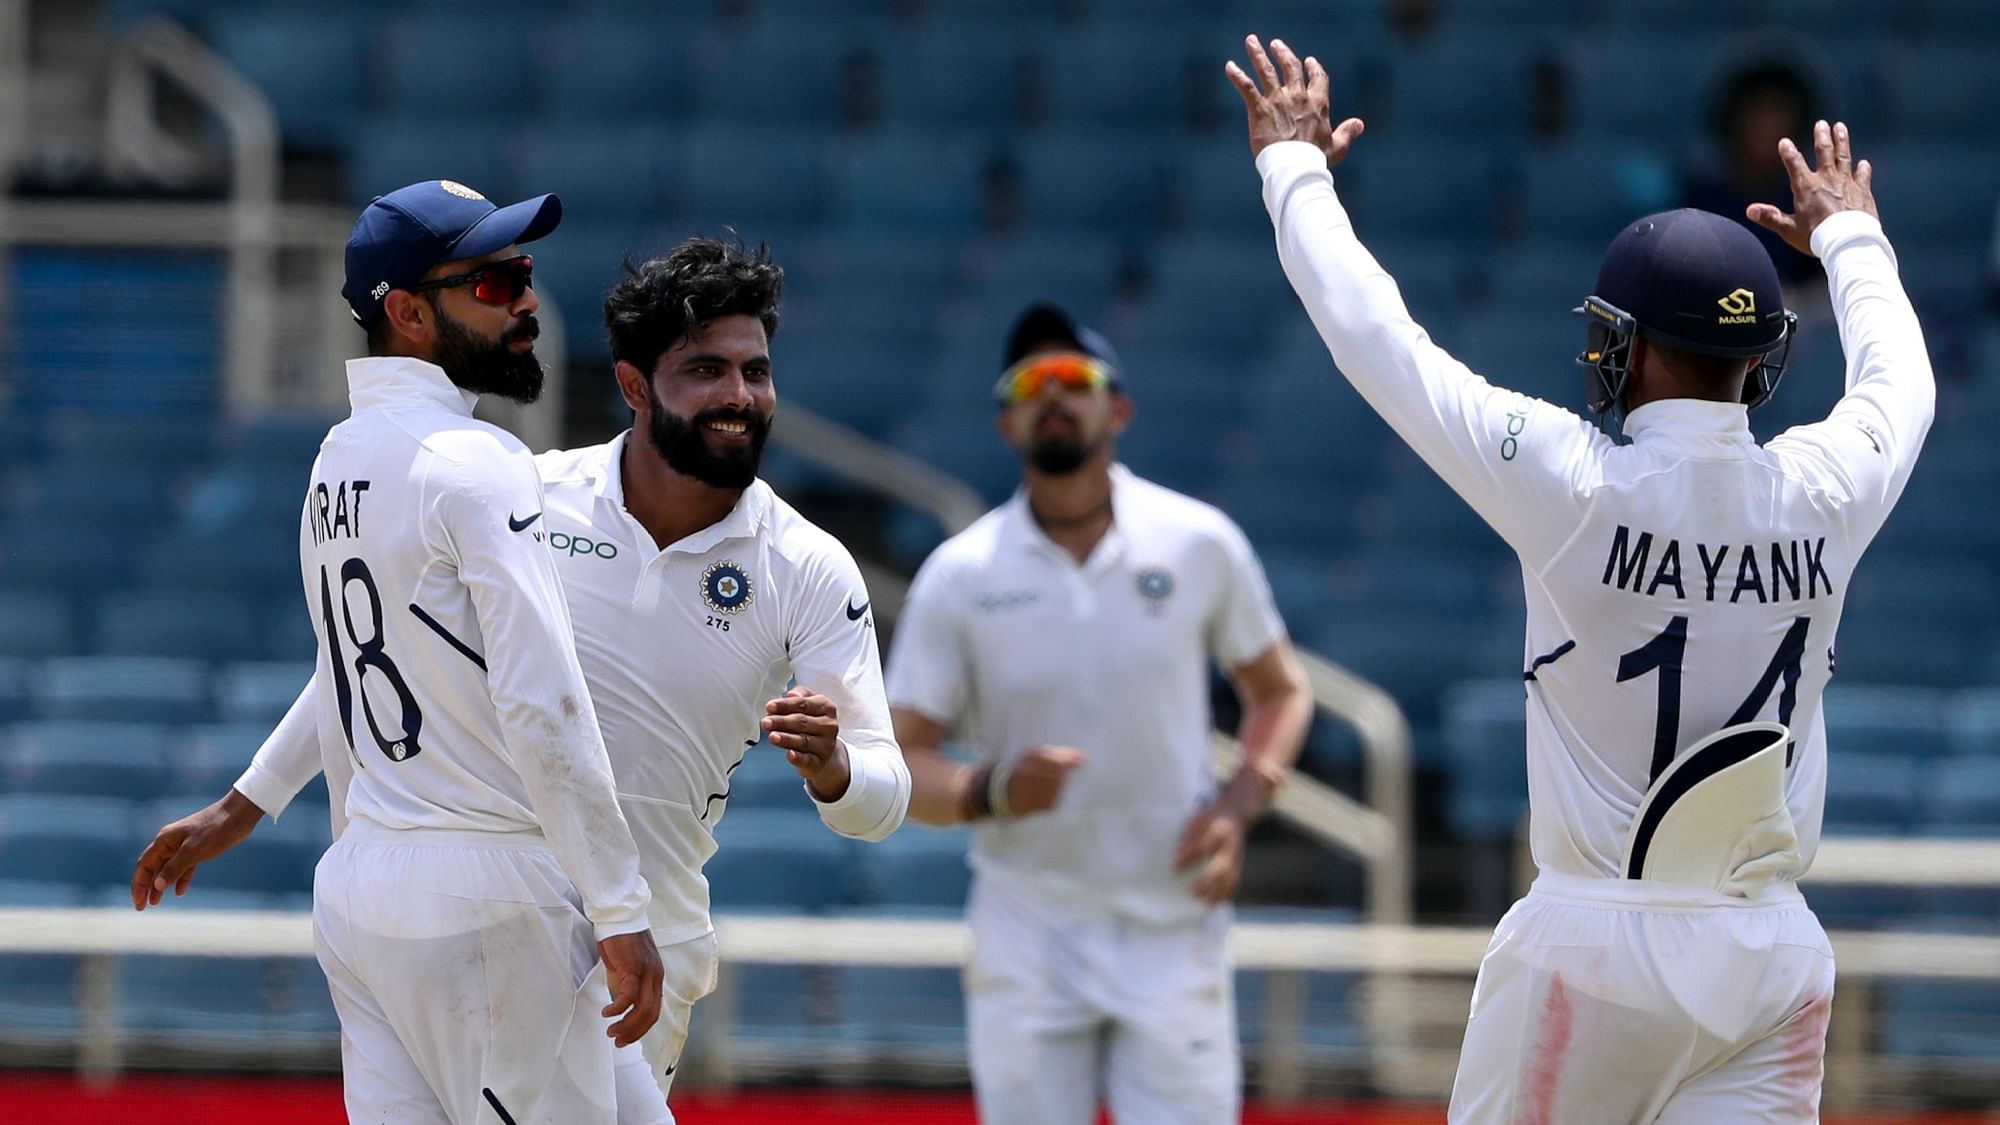 भारत ने वेस्टइंडीज के खिलाफ टी-20 और वनडे सीरीज के बाद टेस्ट में भी क्लीन स्वीप किया